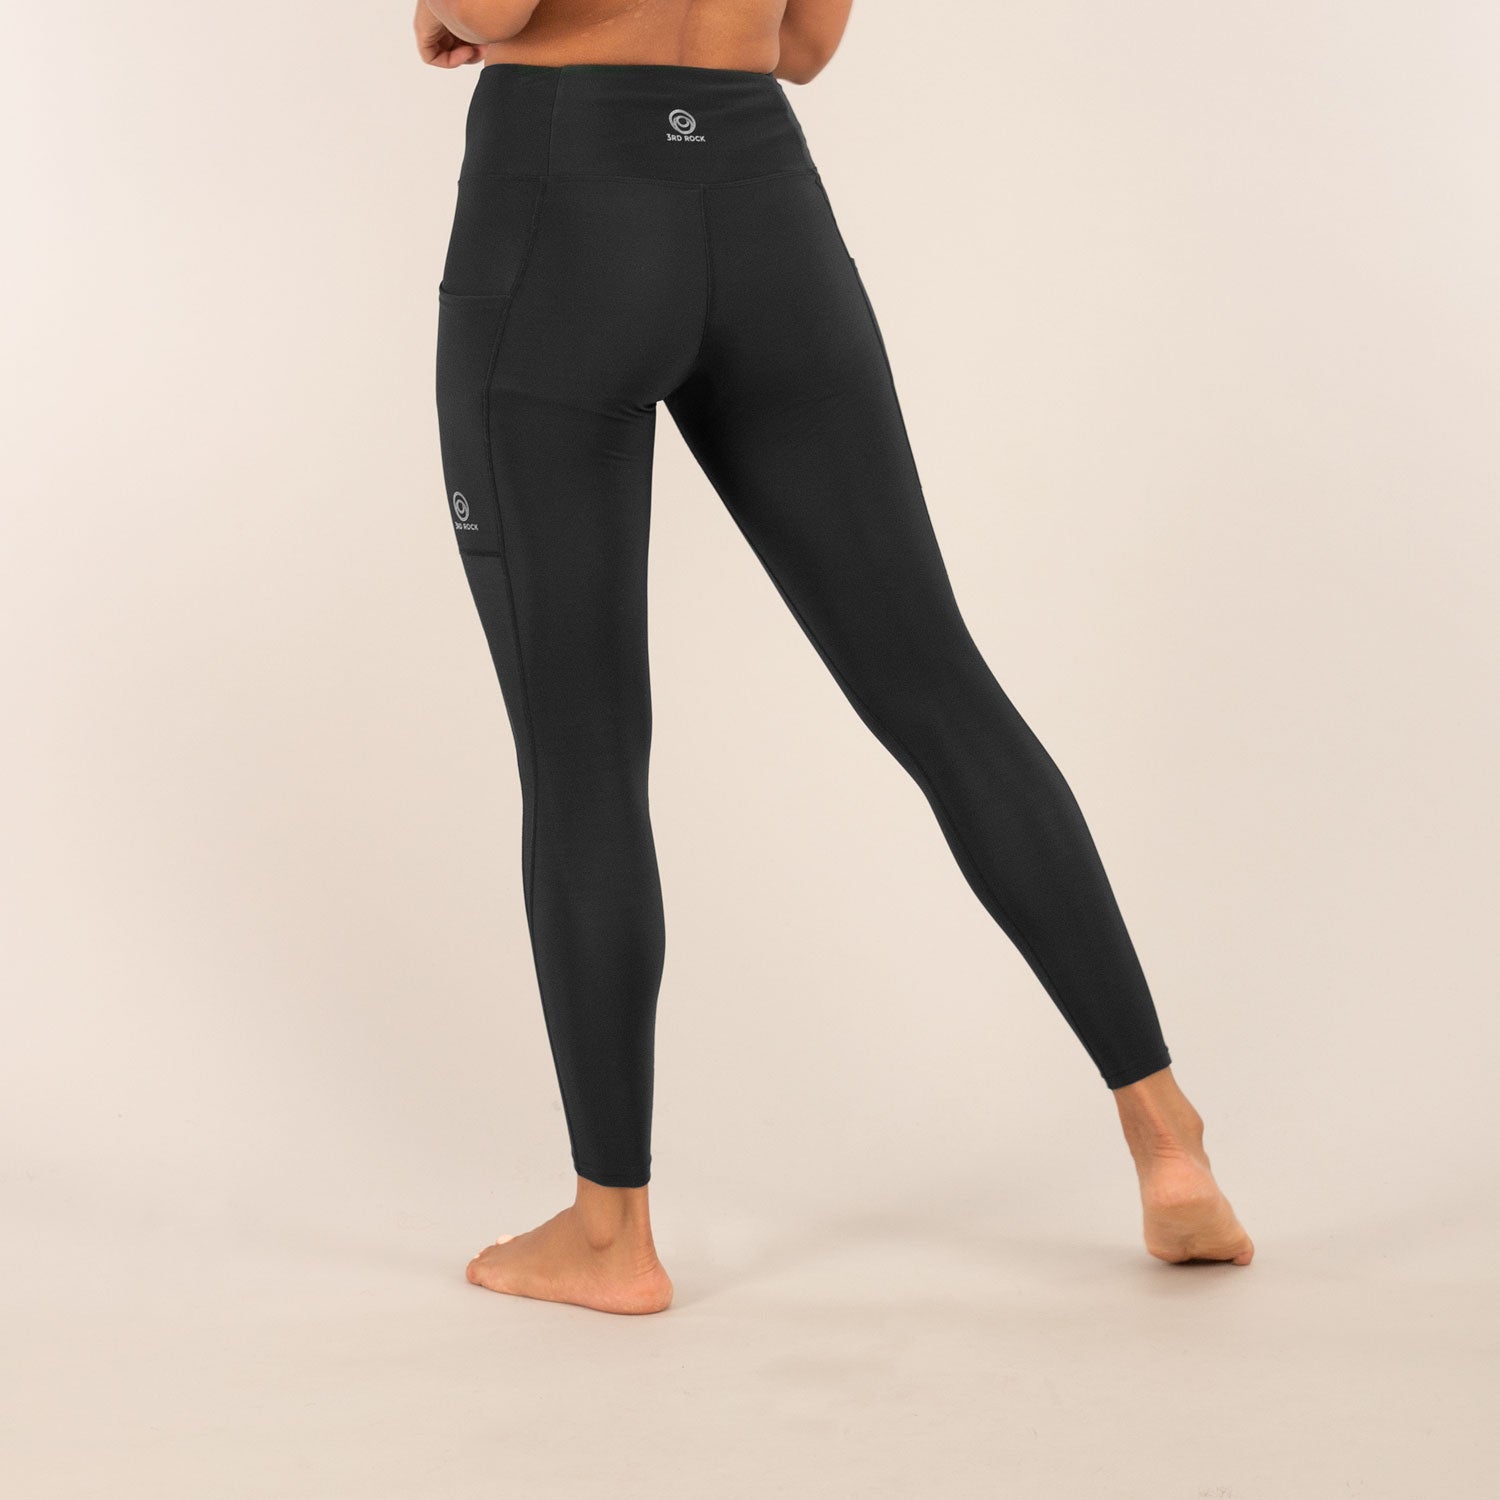 World of Leggings® Made in The USA Women's Full Length Cotton Leggings Black  S at  Women's Clothing store